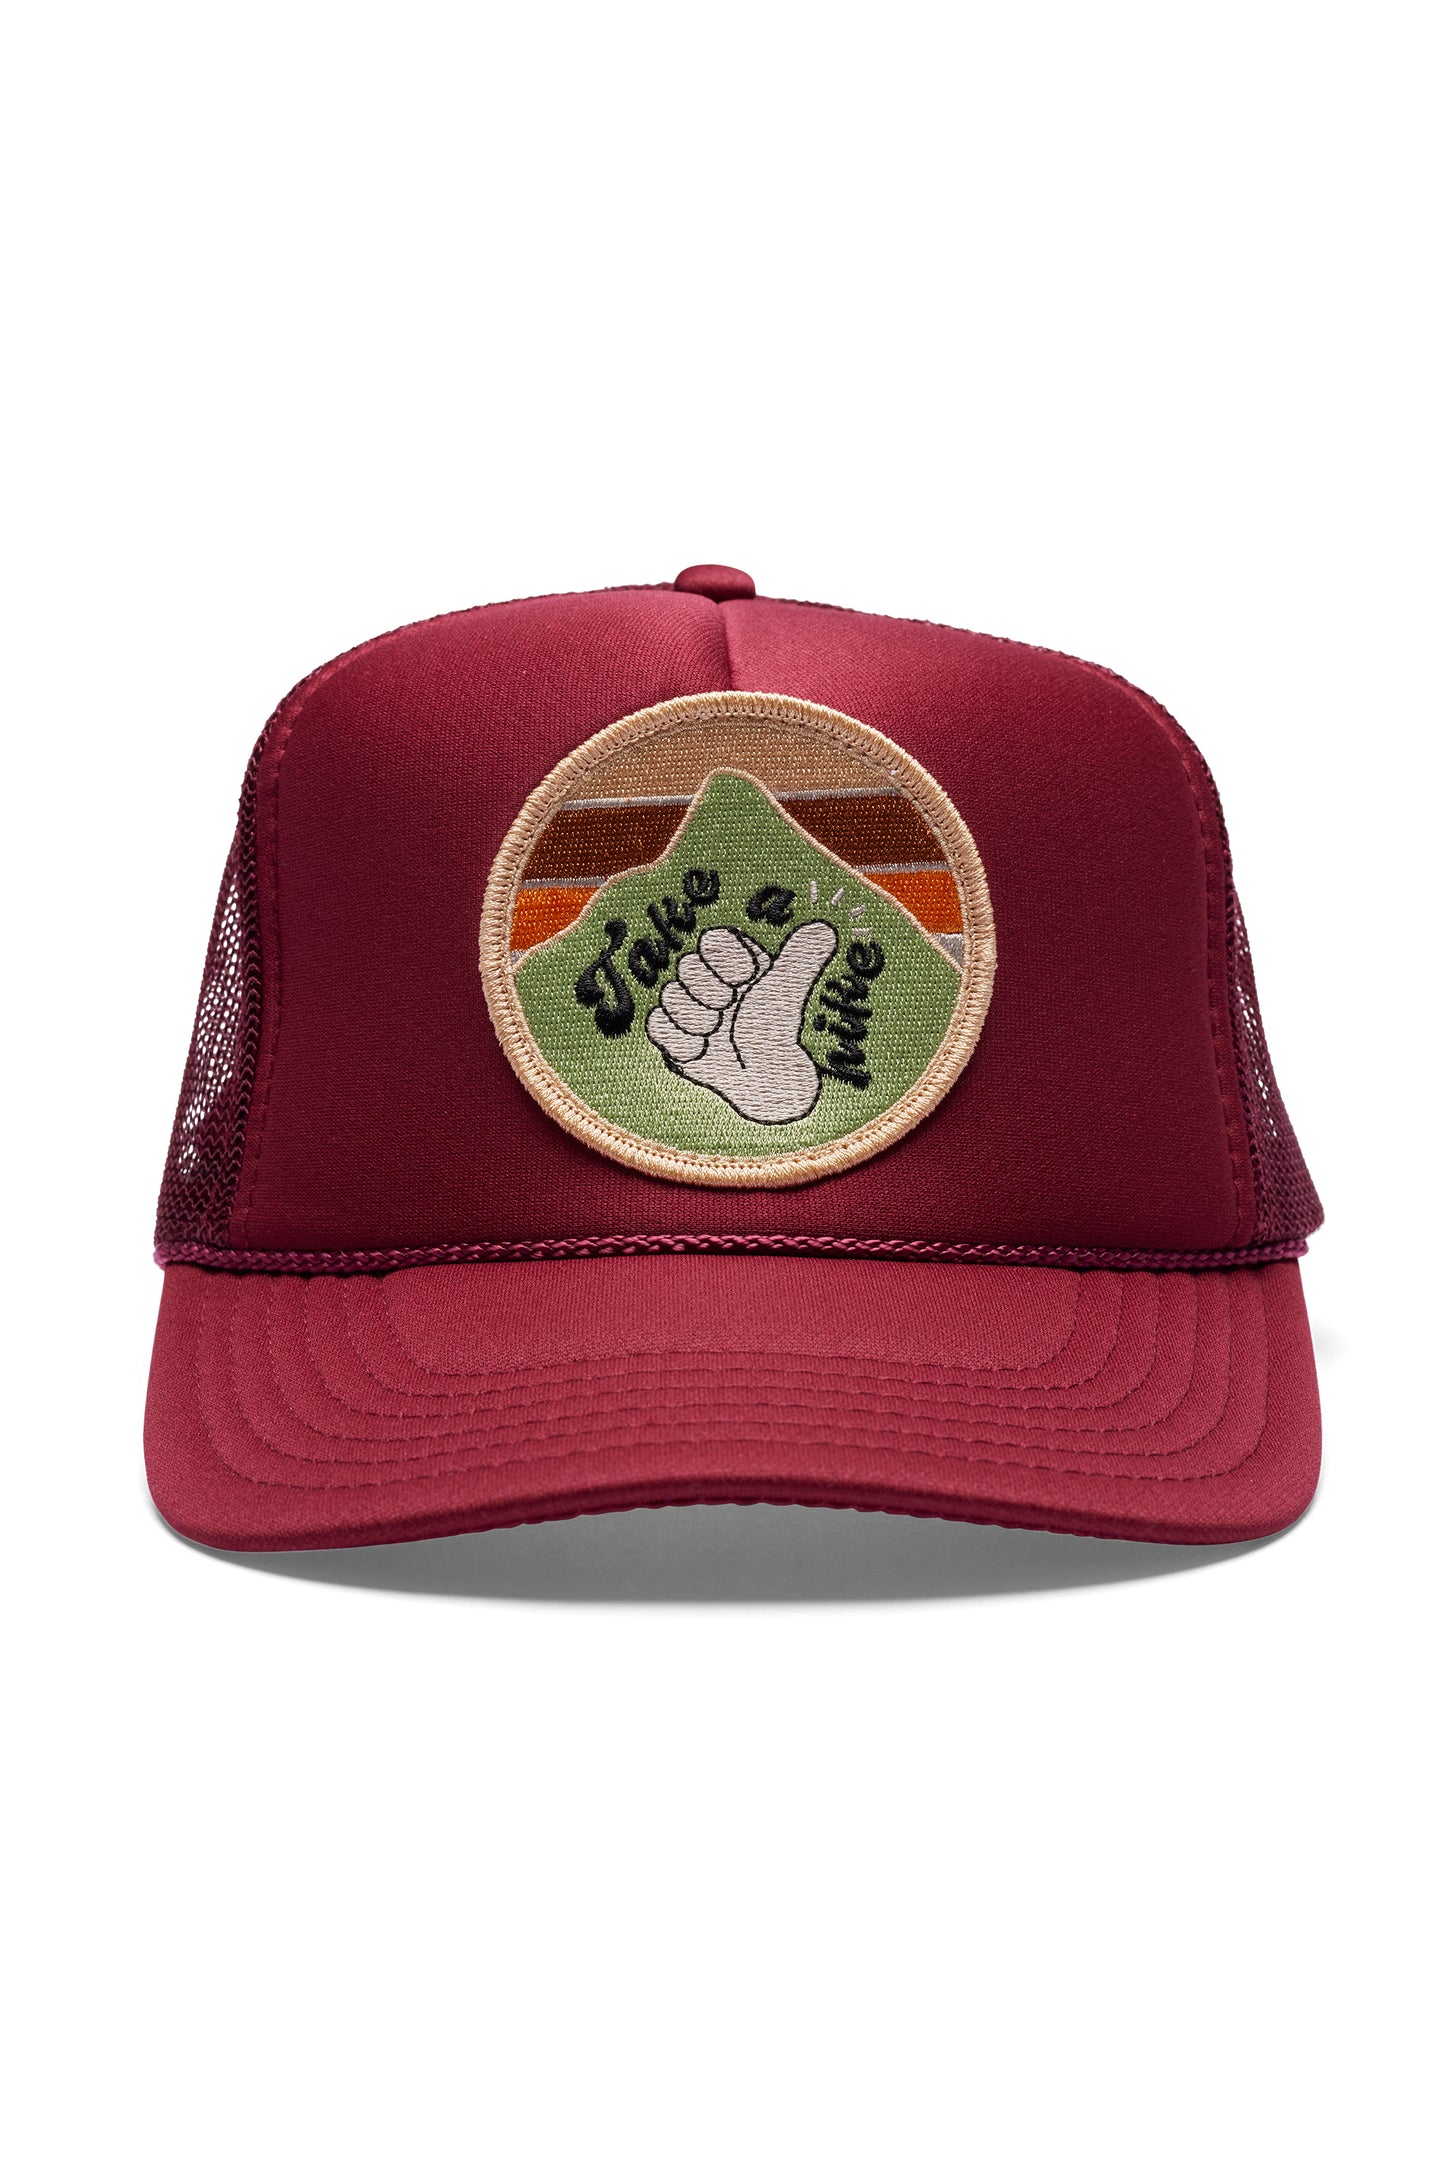 Take A Hike Hat - Maroon